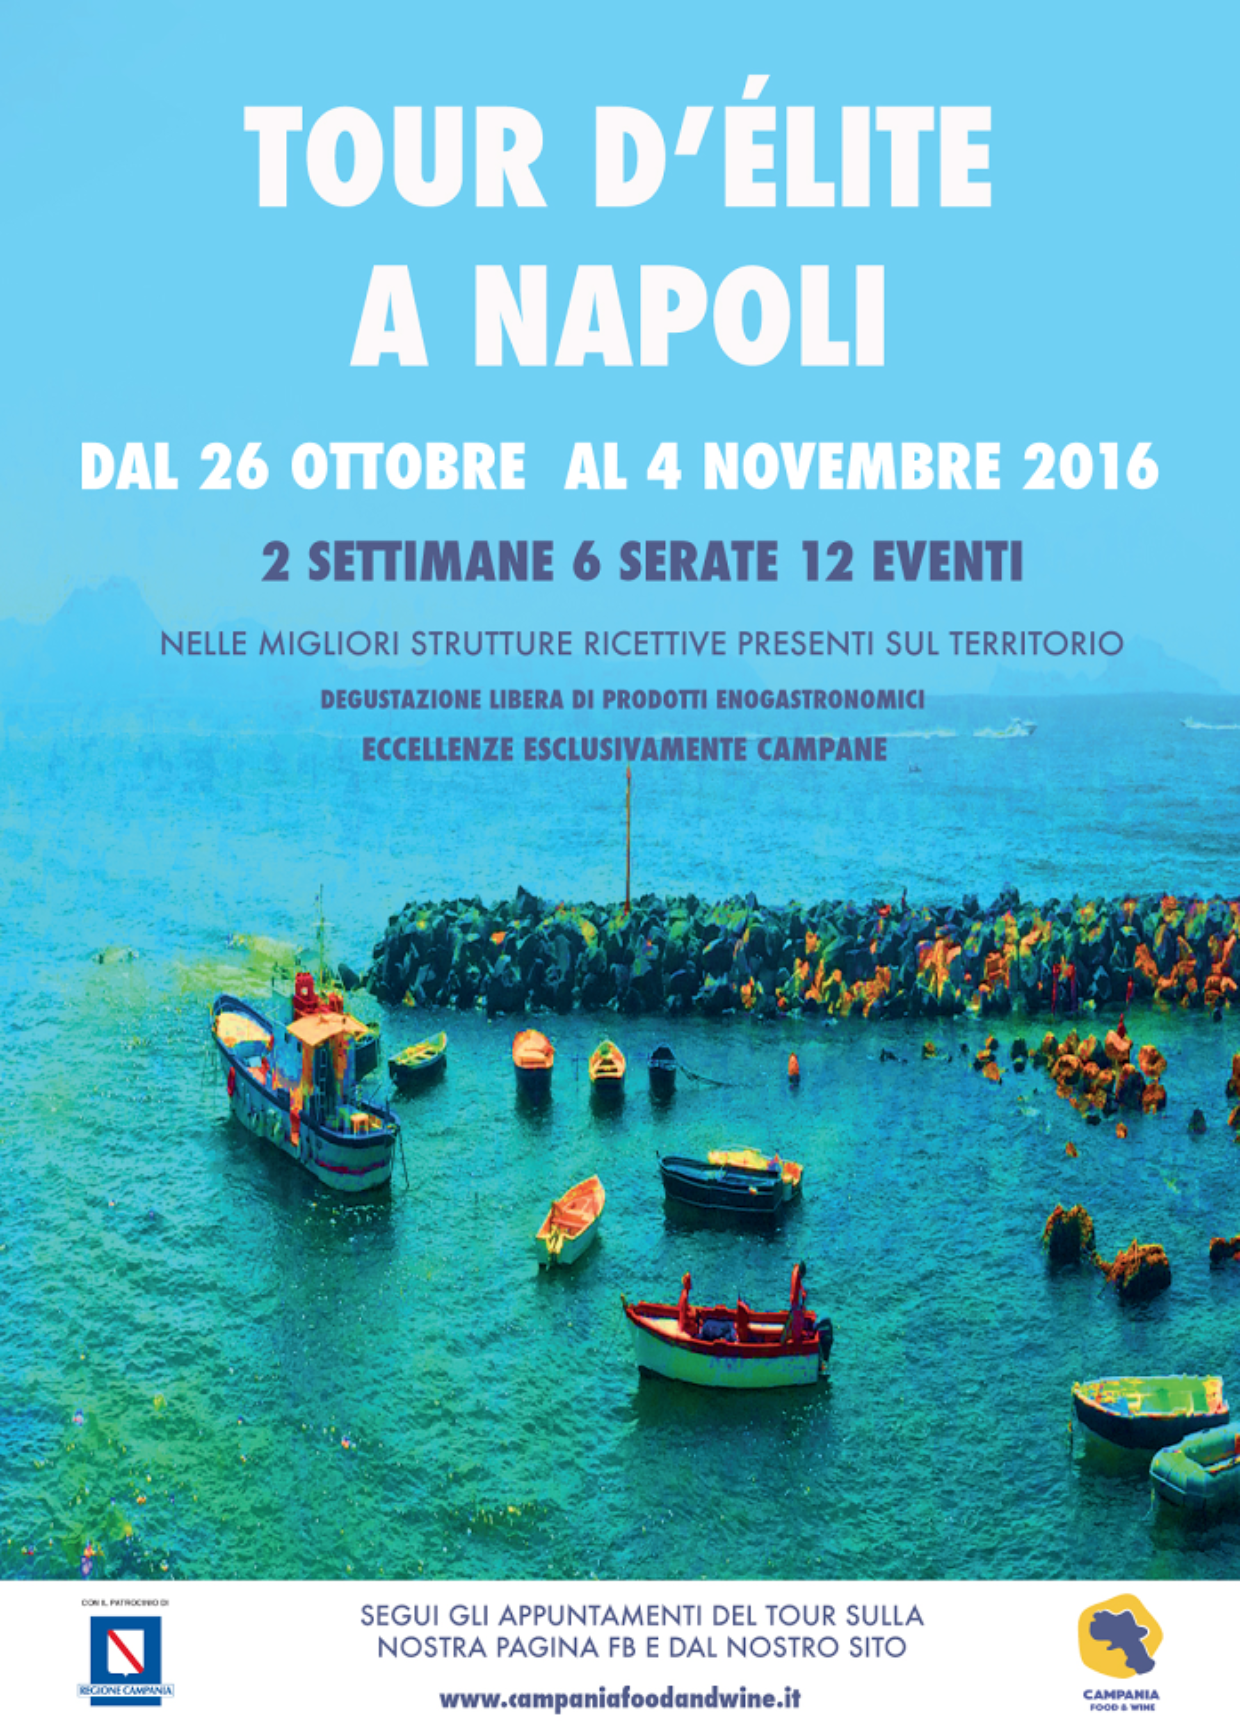 Fino al 4 novembre i nostri vini in degustazione al Tour d’elite a Napoli